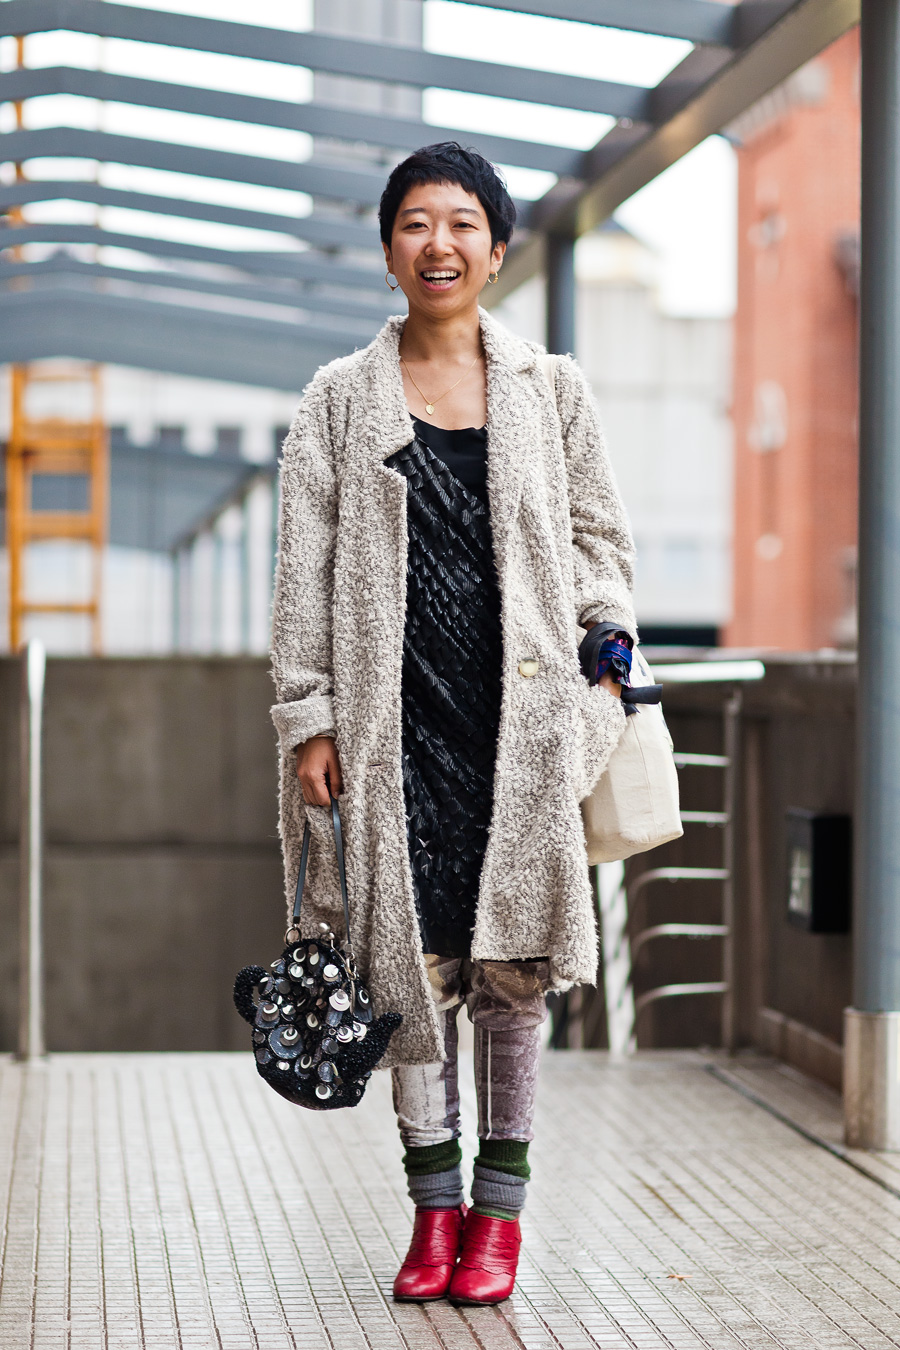 keiko, 32 años, fashion buyer.